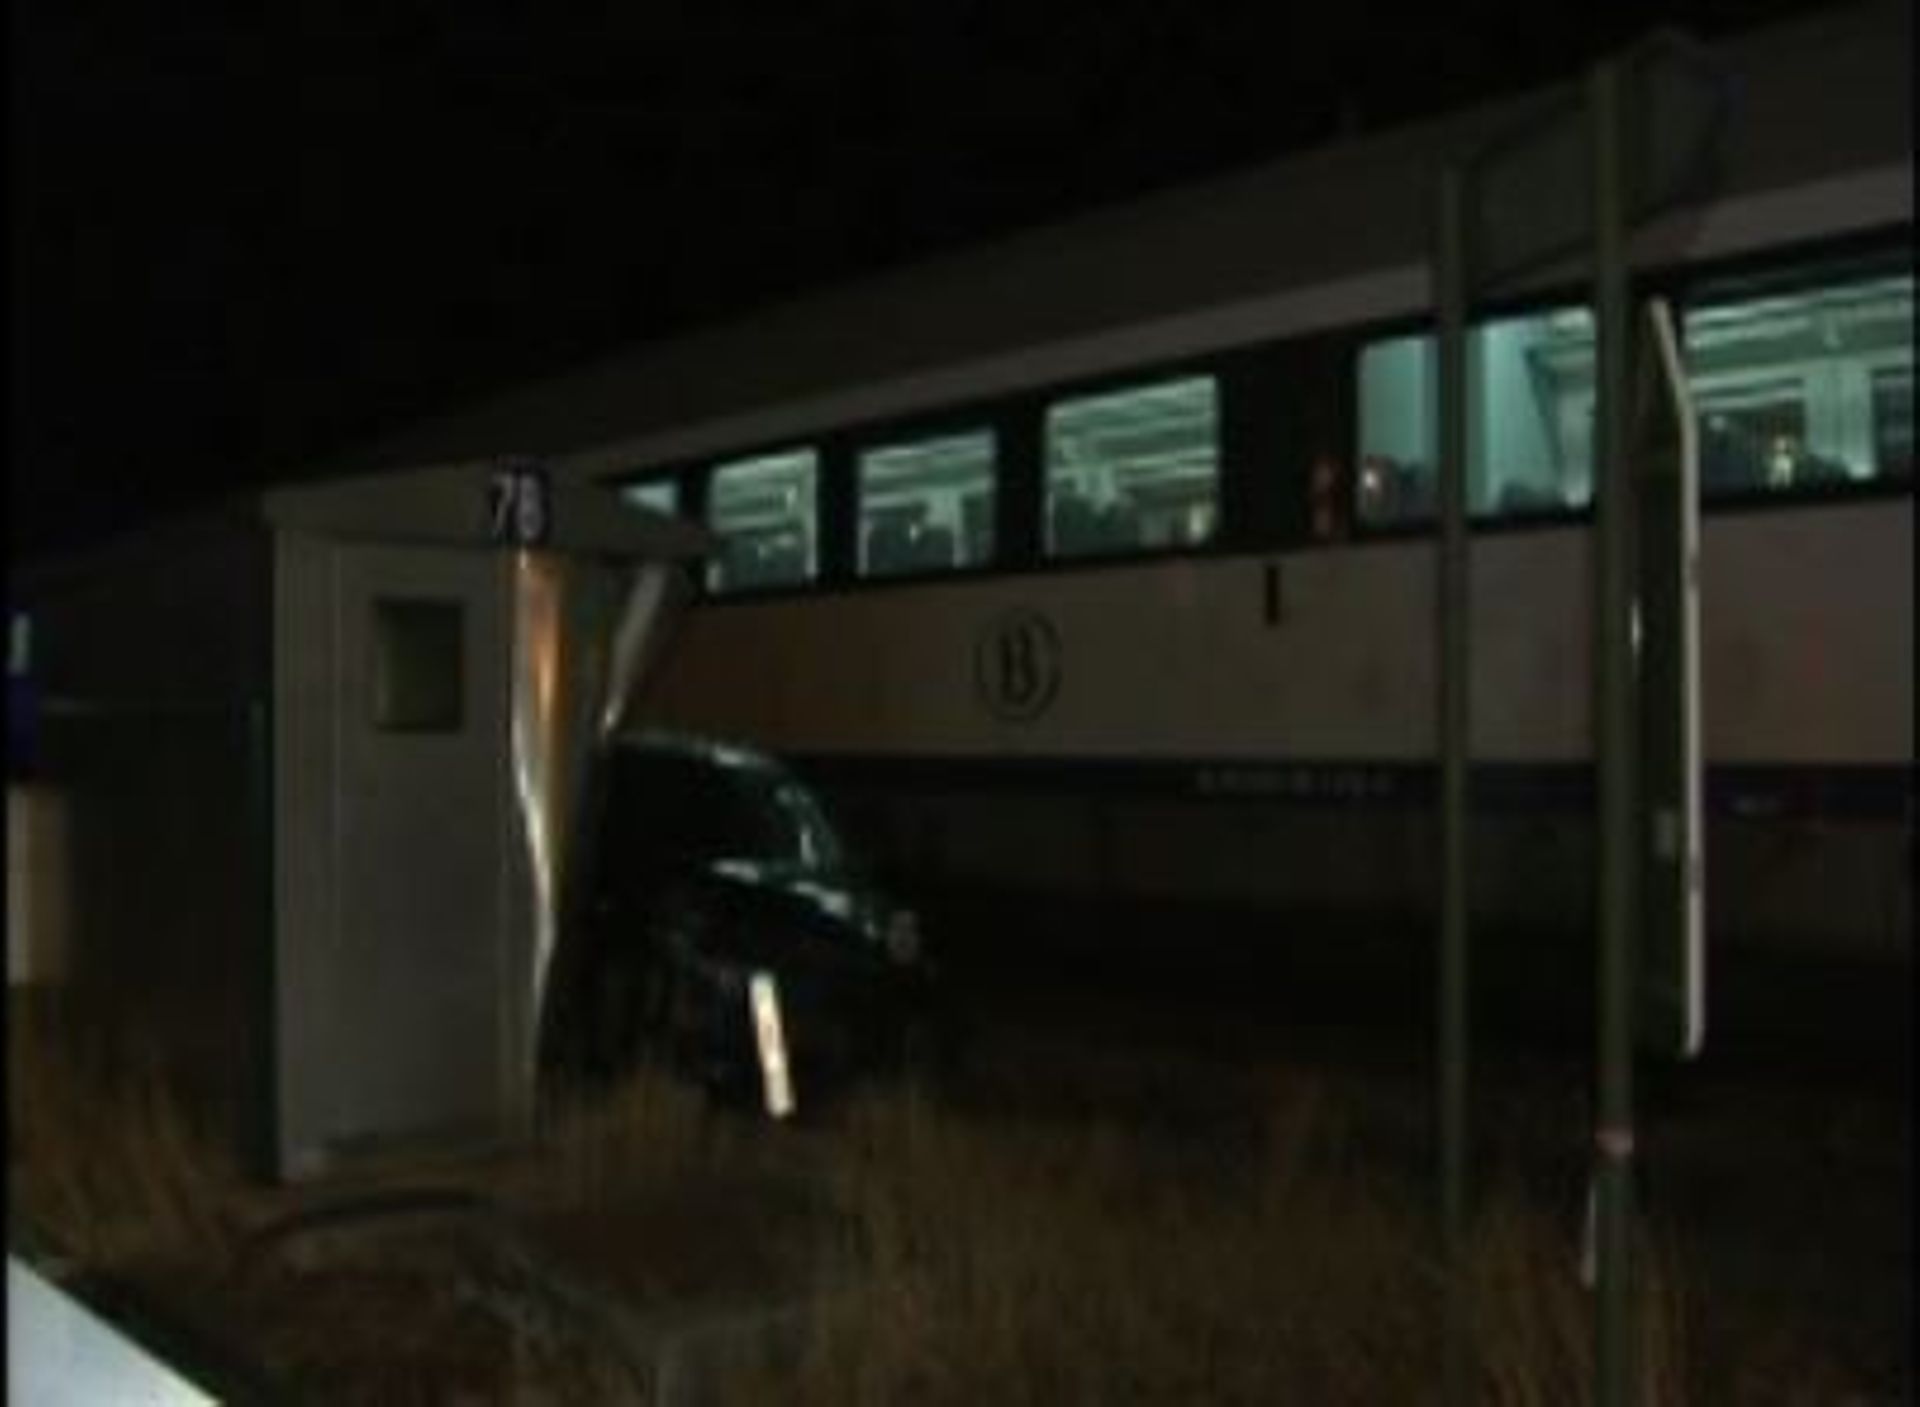 Le train n'a pas pu freiner à temps et a percuté la voiture, qui a été traînée sur plusieurs mètres. 